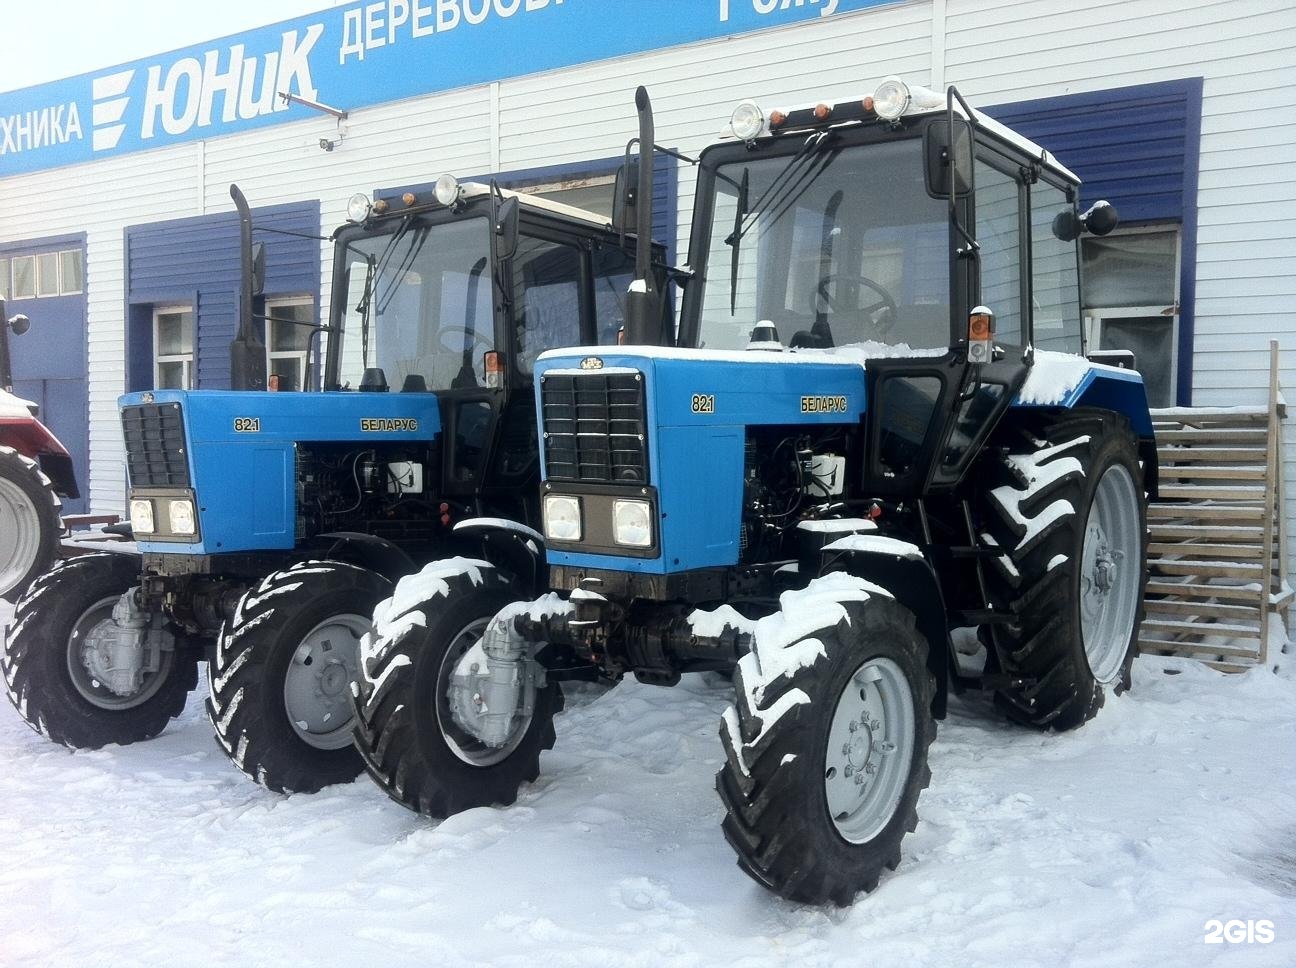 Купить новый трактор 82.1. Трактор "Беларус-82.1" (МТЗ) новый. Трактор Беларус 82.1. Колесный трактор Беларус-82.1. Трактор МТЗ-82 новый.